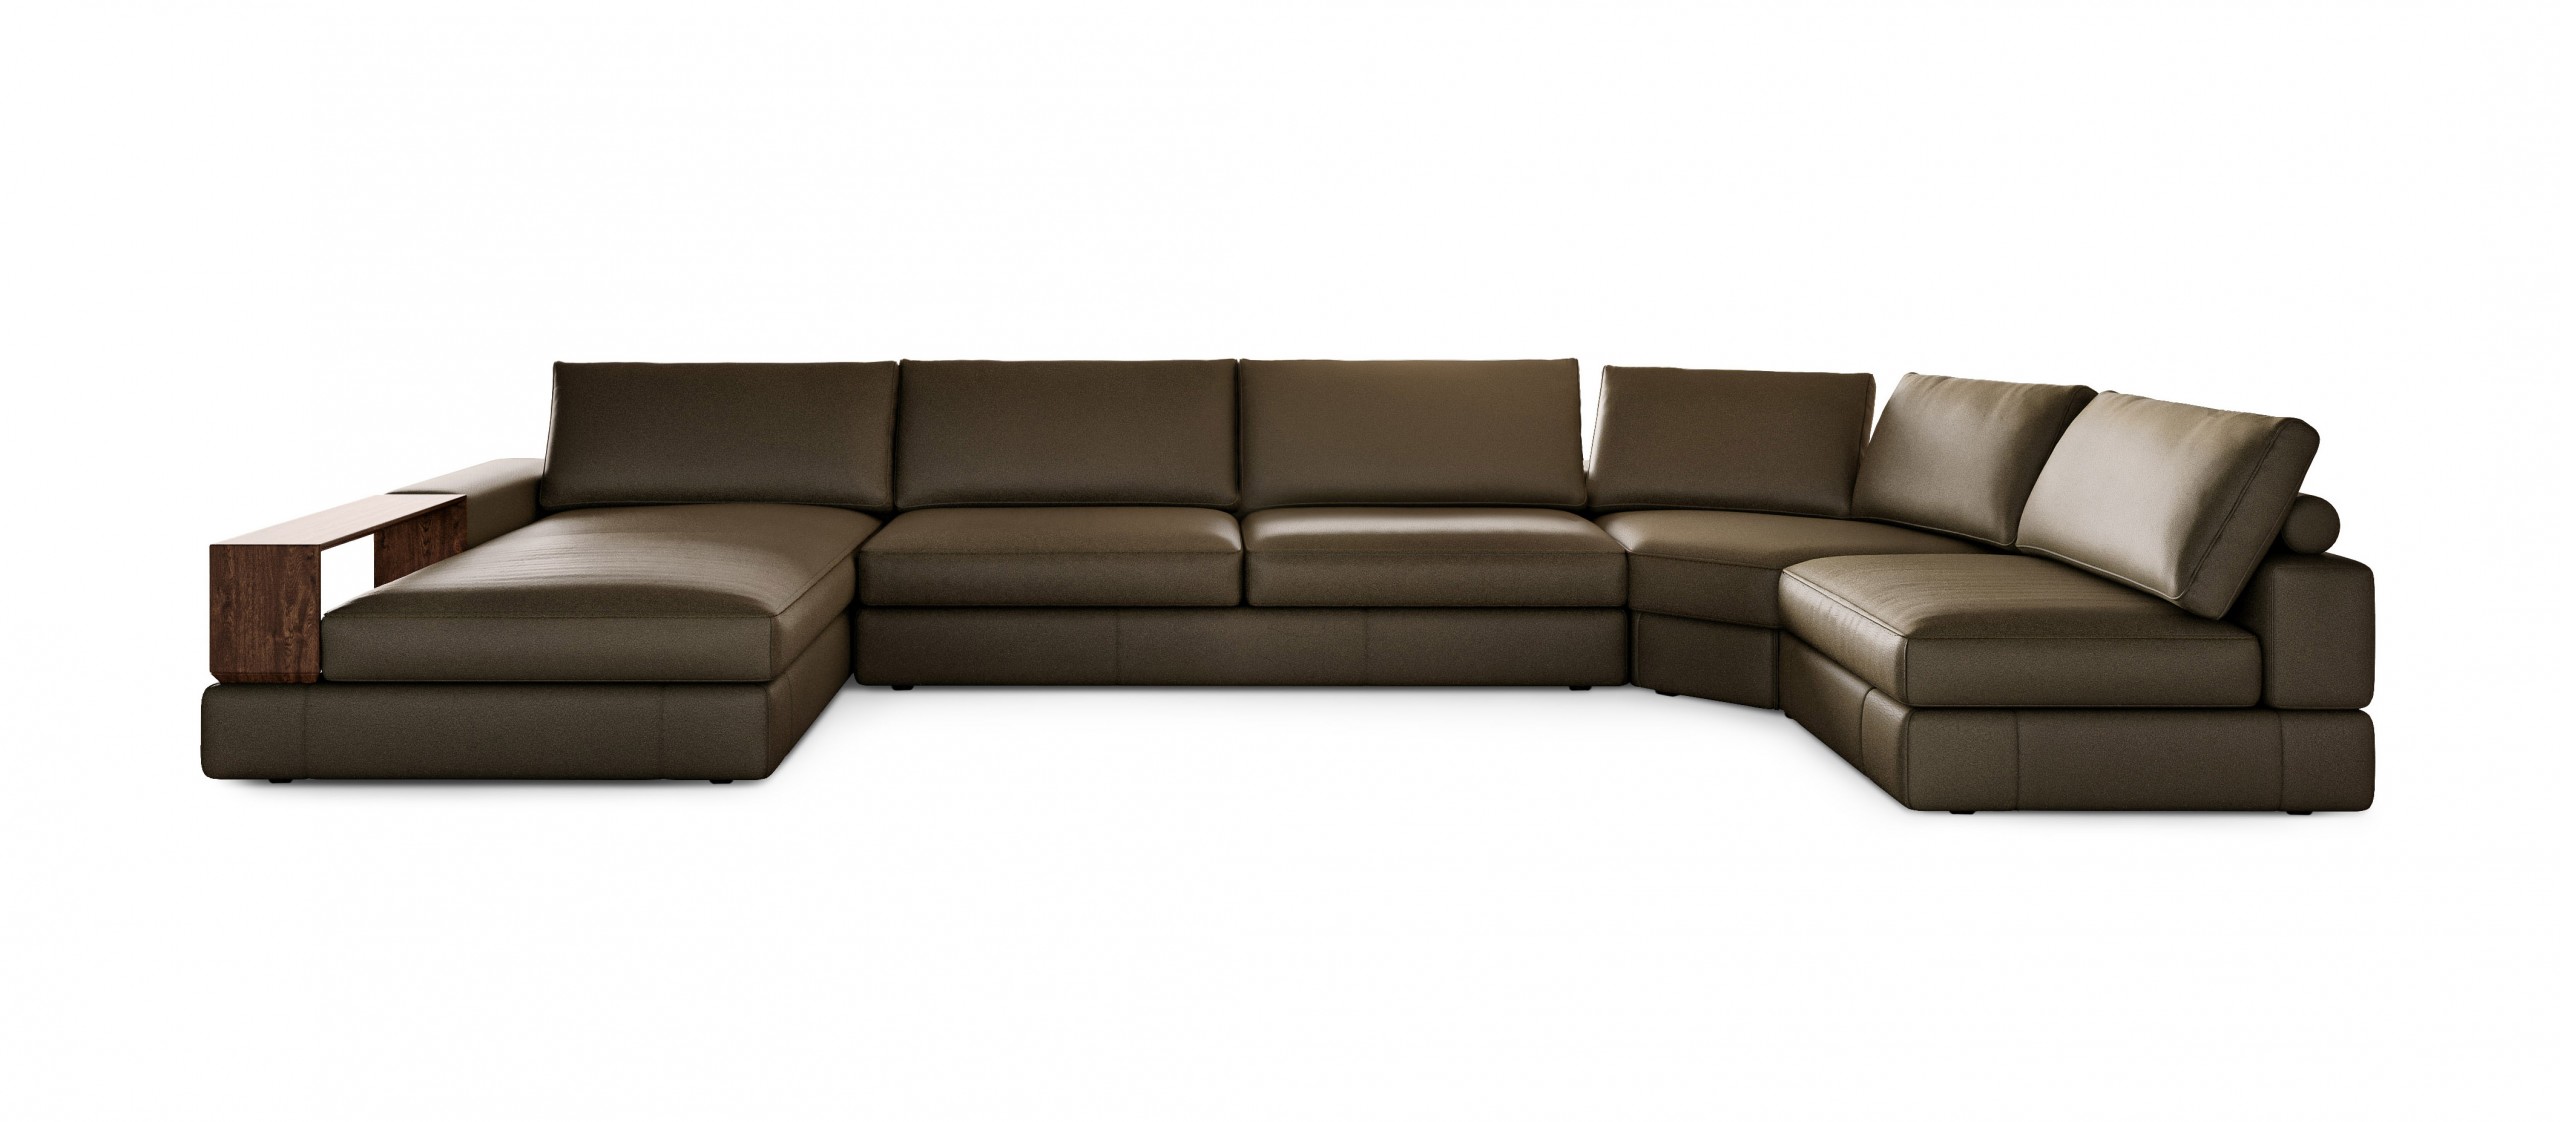 squarerooms king living jasper sofa jasper curve model leather